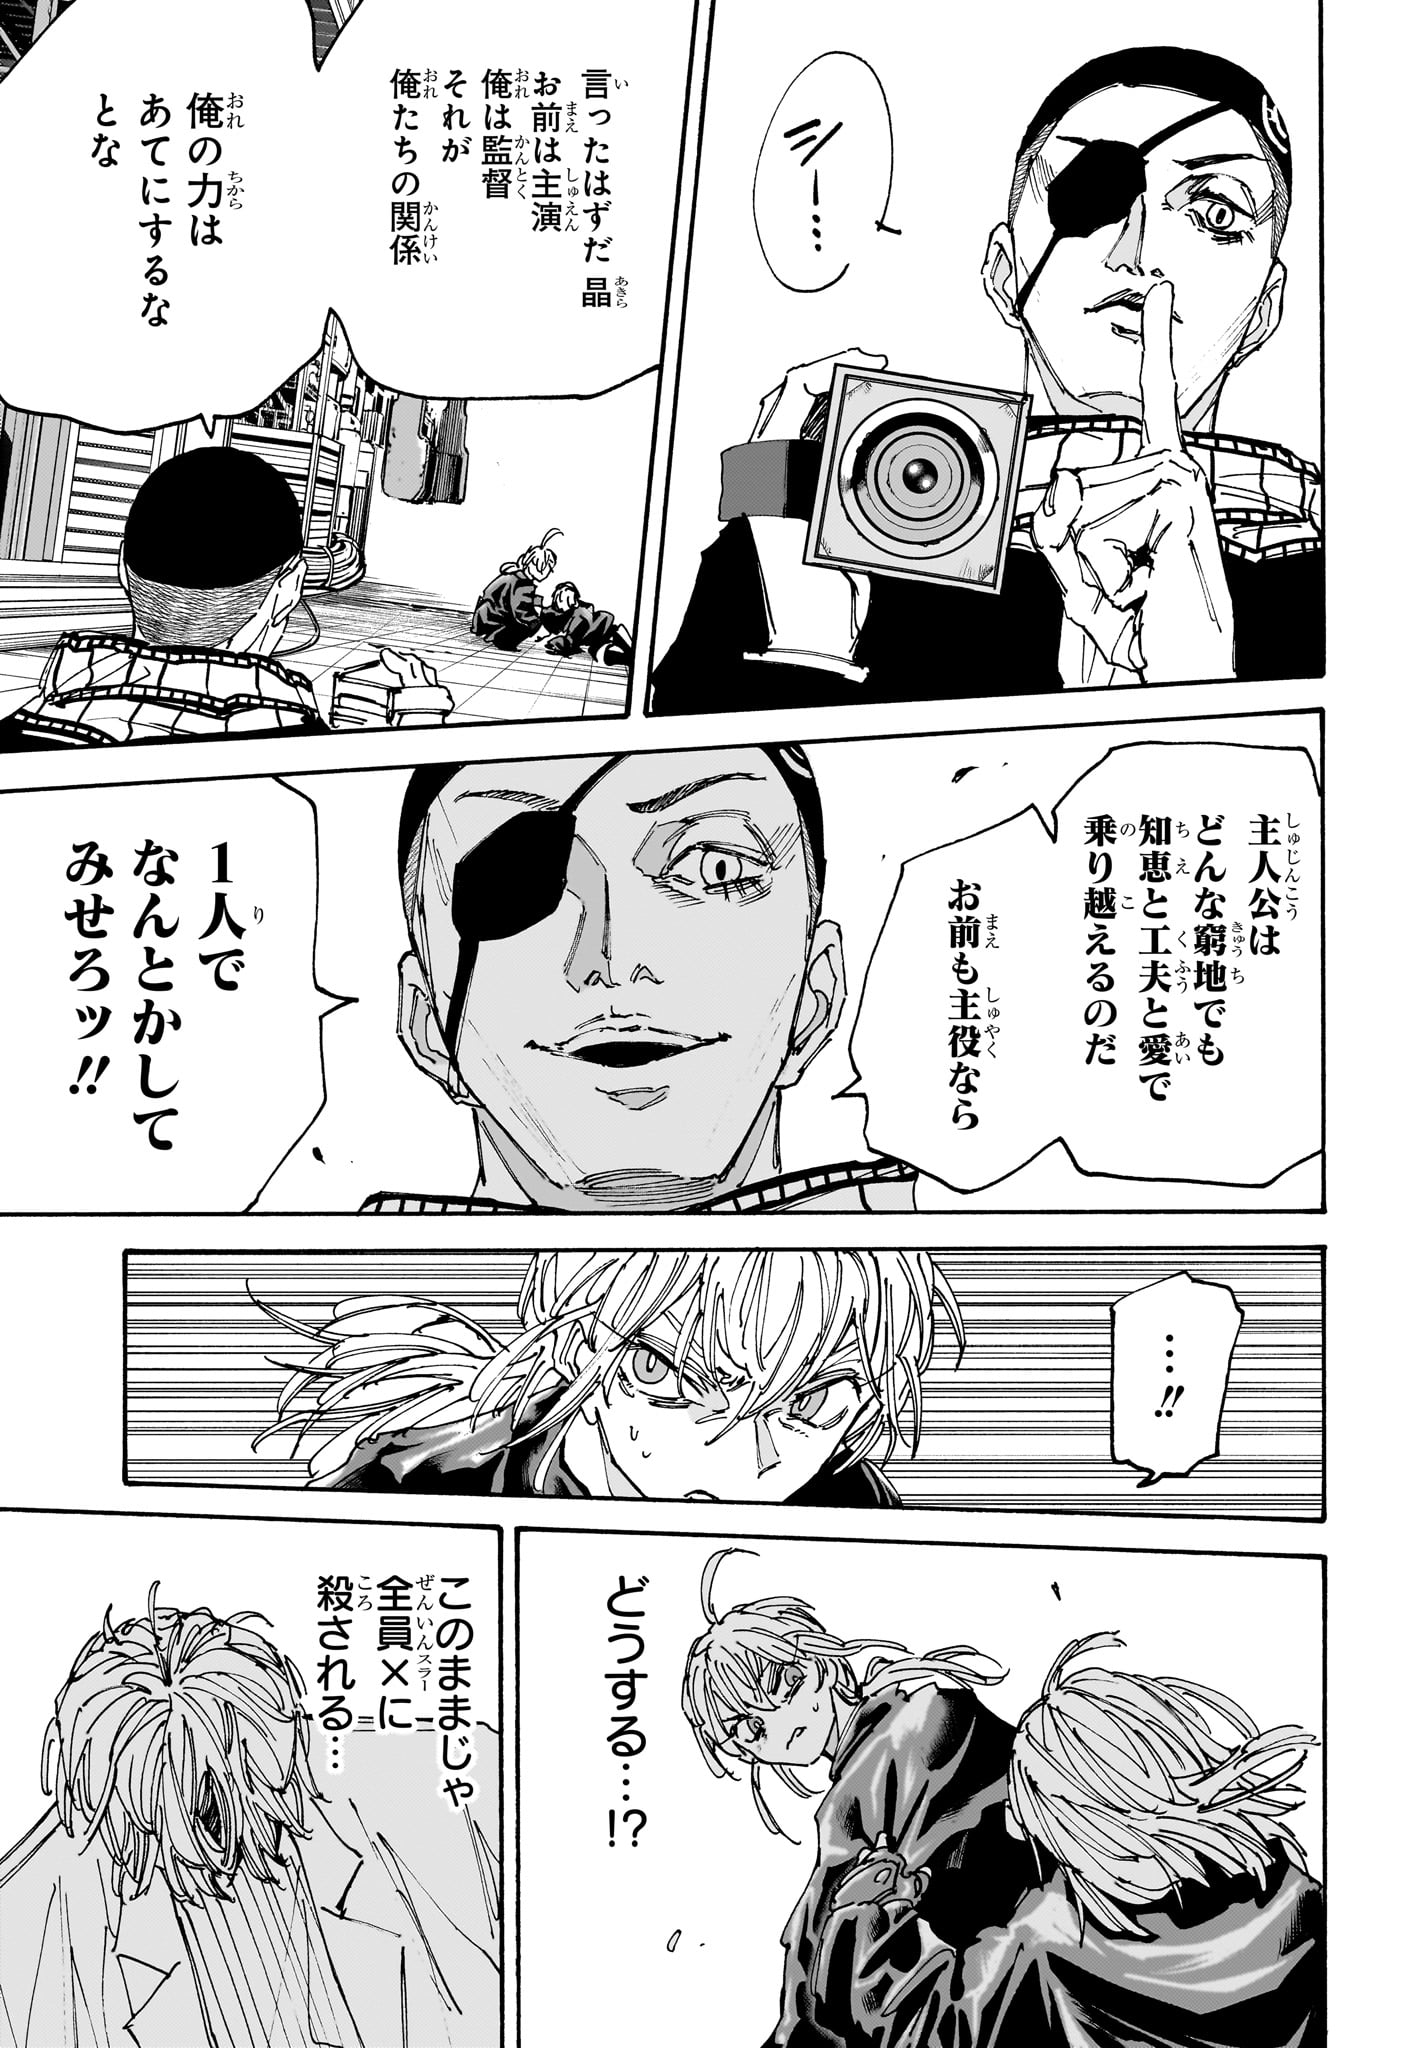 Sakamoto Days - Chapter 172 - Page 11